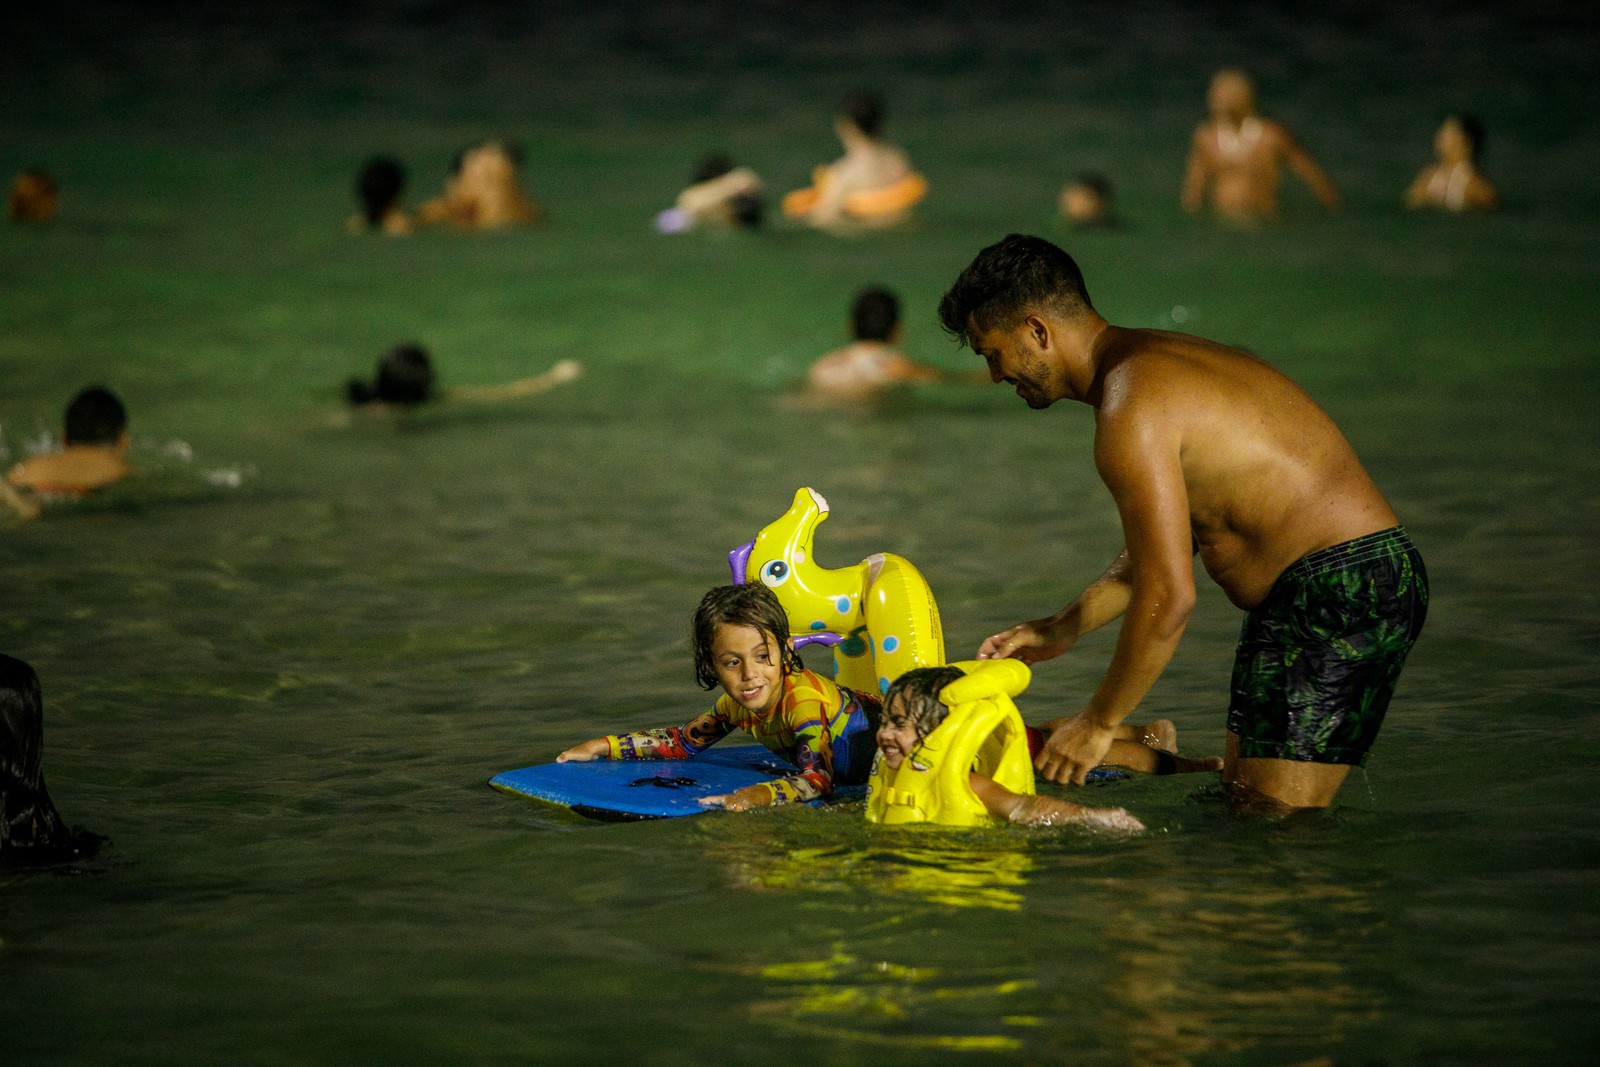 Famílias com crianças aproveitam a diversão na água até altas horas no verão carioca  — Foto: Brenno Carvalho